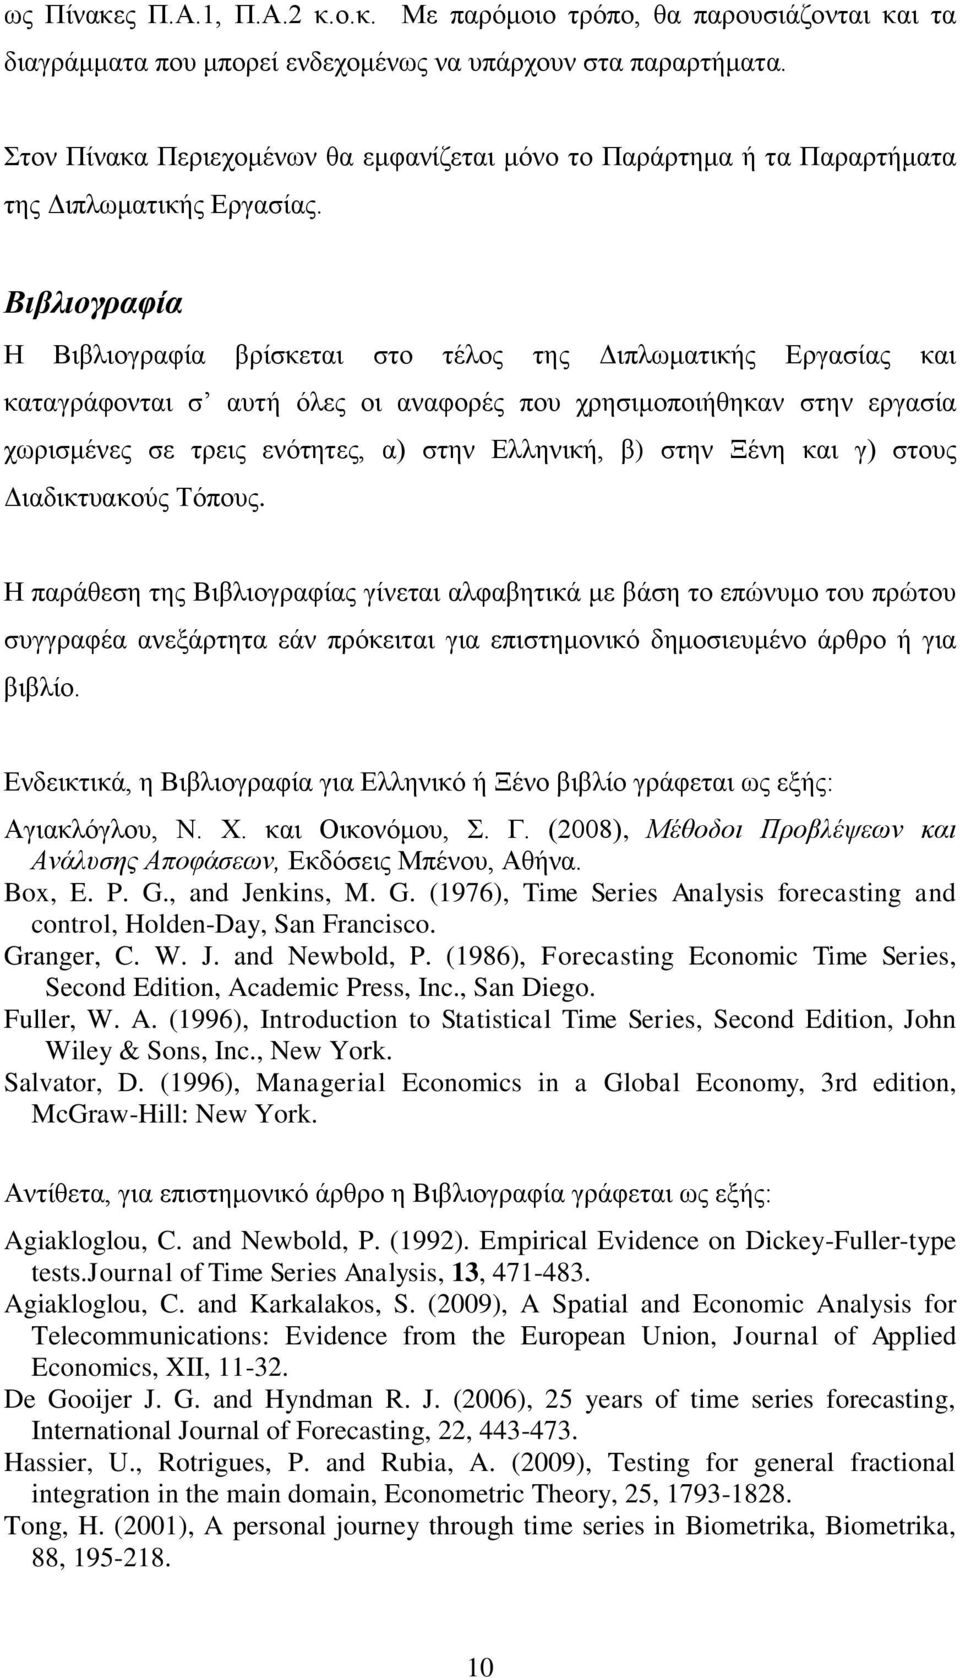 Βιβλιογραφία Η Βιβλιογραφία βρίσκεται στο τέλος της Διπλωματικής Εργασίας και καταγράφονται σ αυτή όλες οι αναφορές που χρησιμοποιήθηκαν στην εργασία χωρισμένες σε τρεις ενότητες, α) στην Ελληνική,